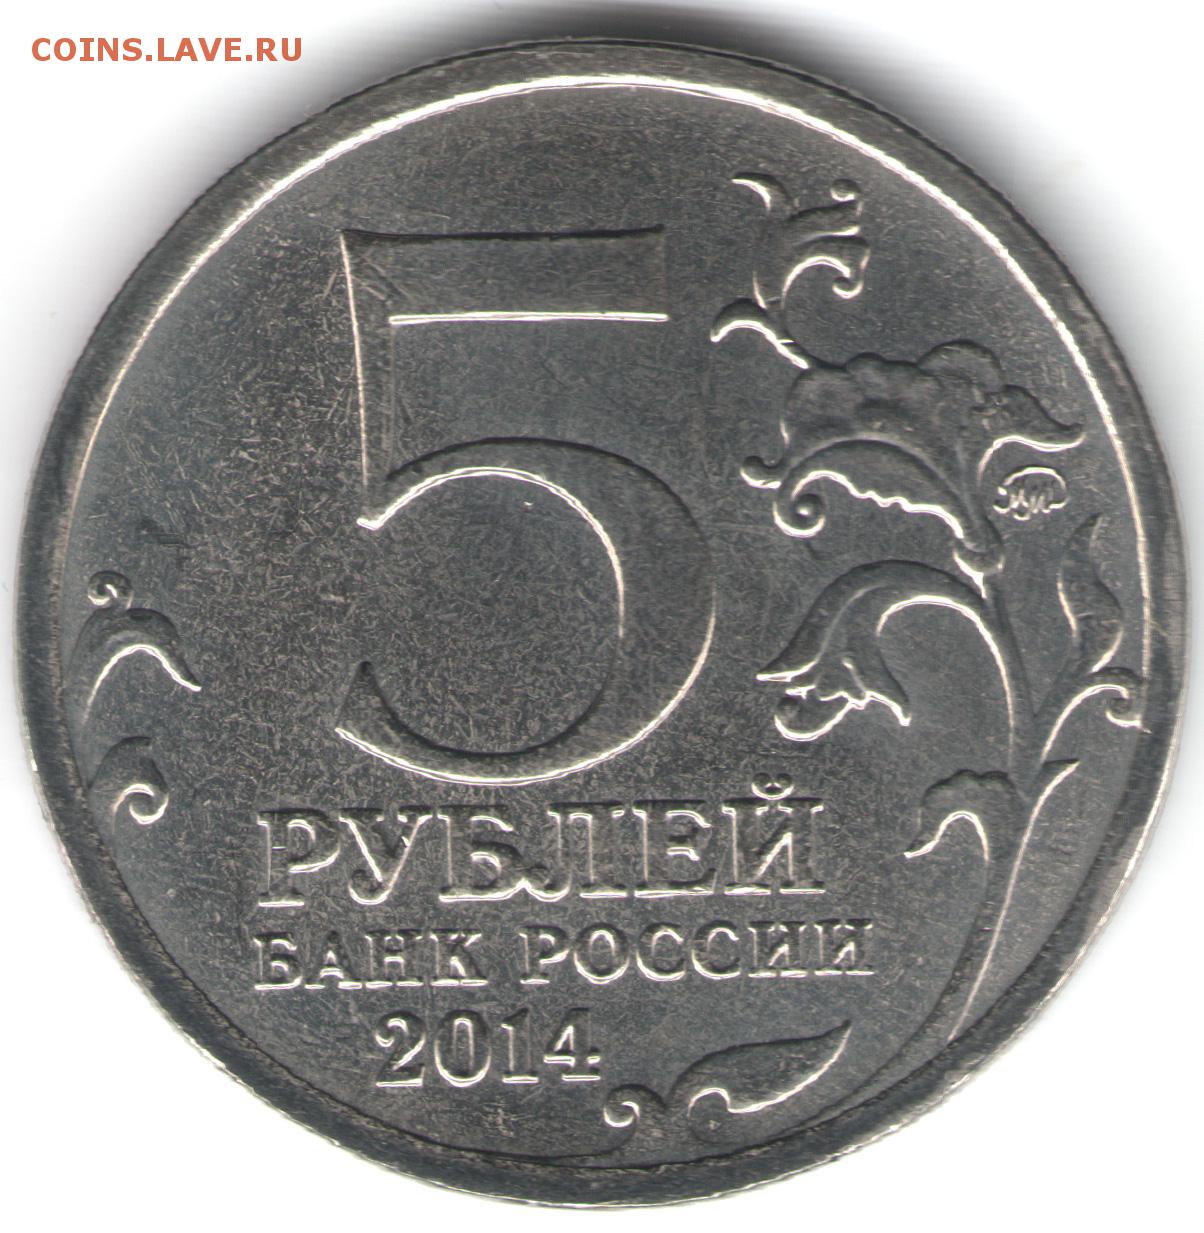 Момента 5 рублей. Плакировка слоение 5 рублей 1998. Монета 5 рублей. Пять рублей монета. Монетка 5 рублей.